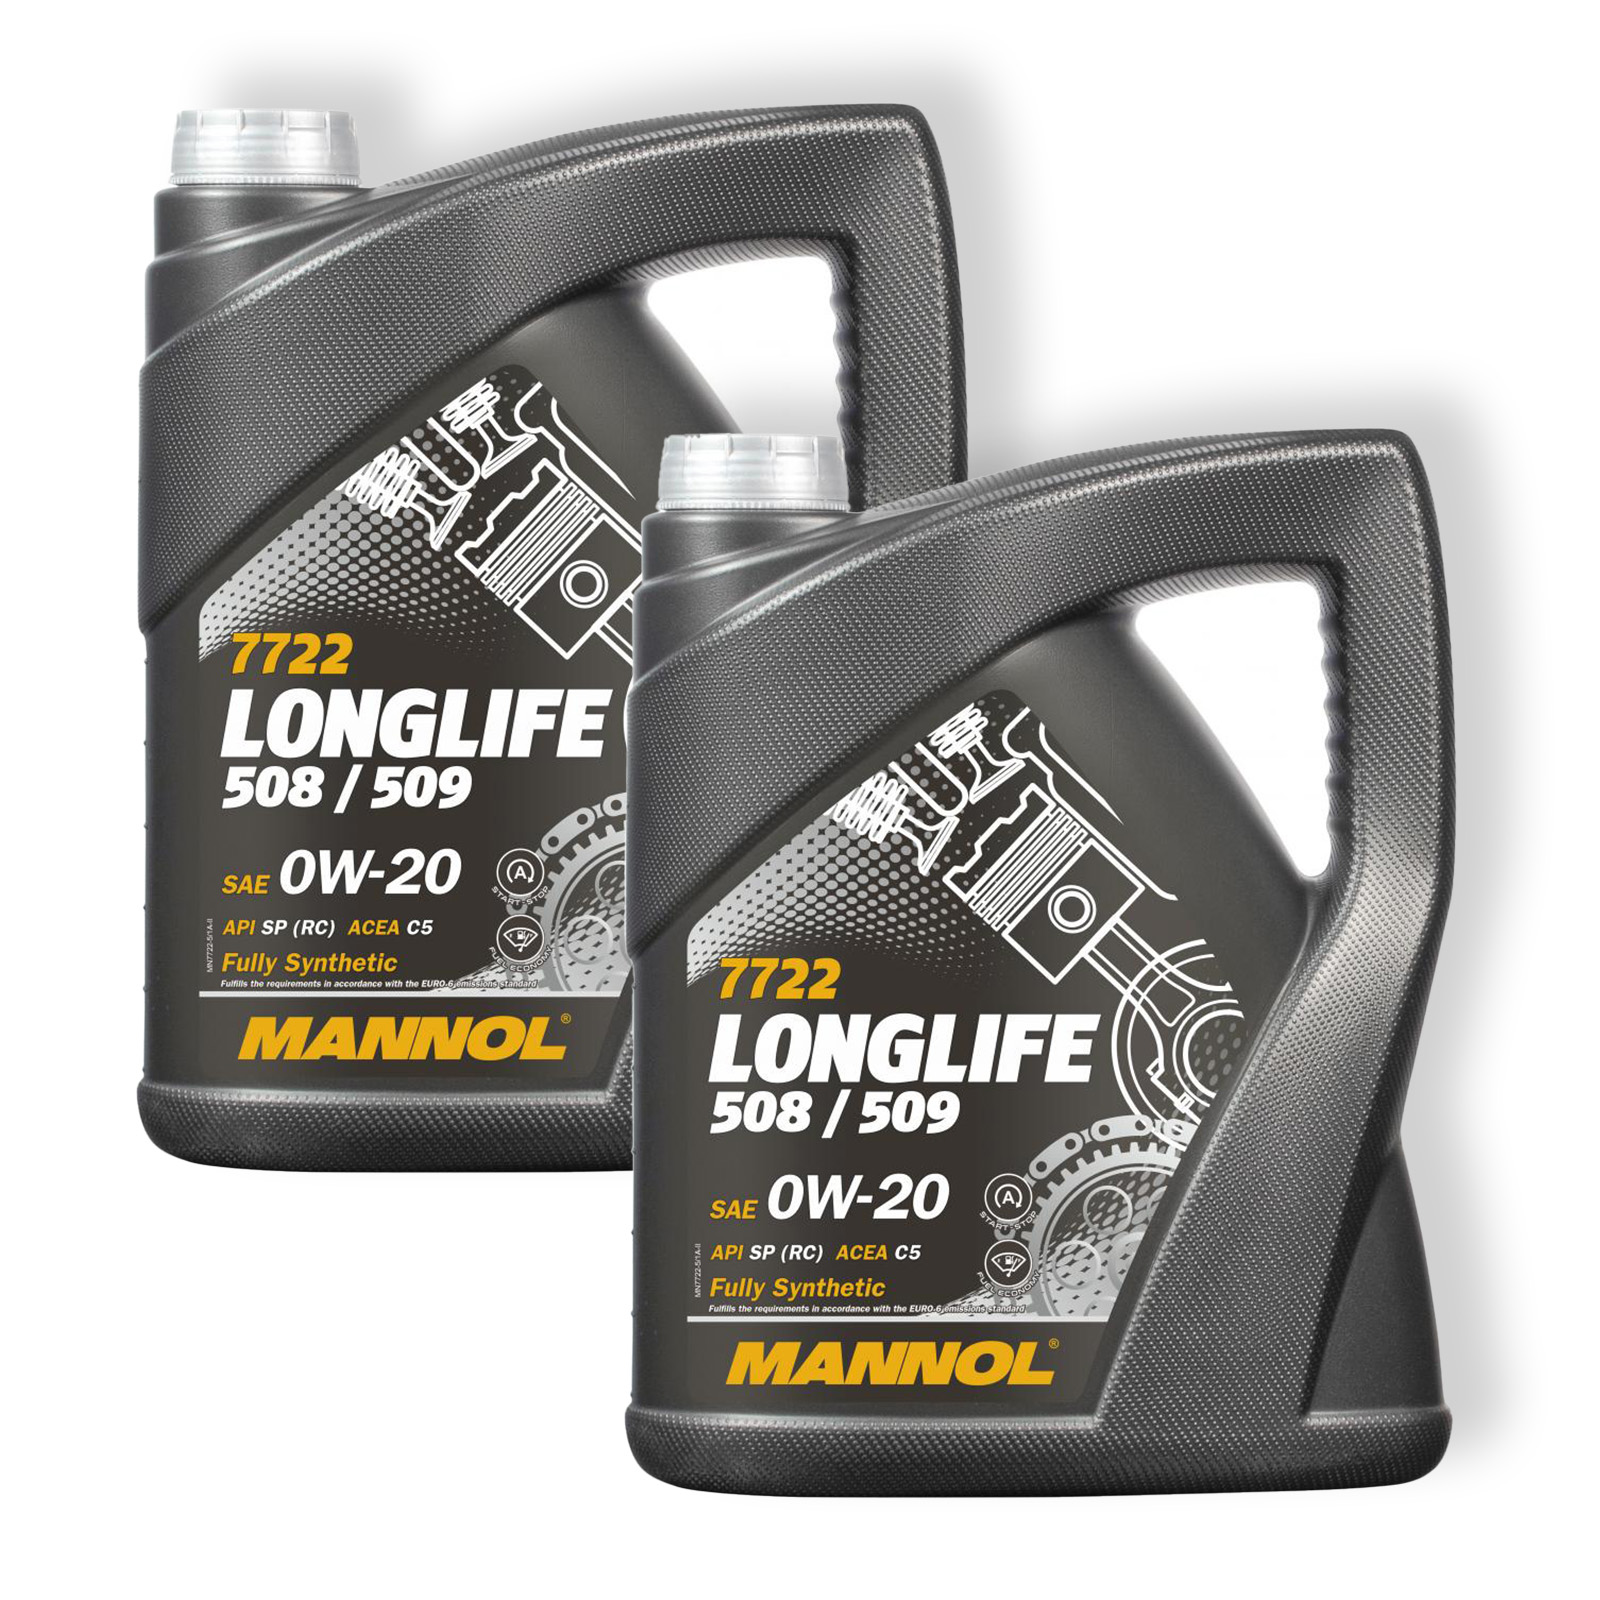 2x 5L Mannol Motoröl Longlife 508/509 0W-20 MN7722-5